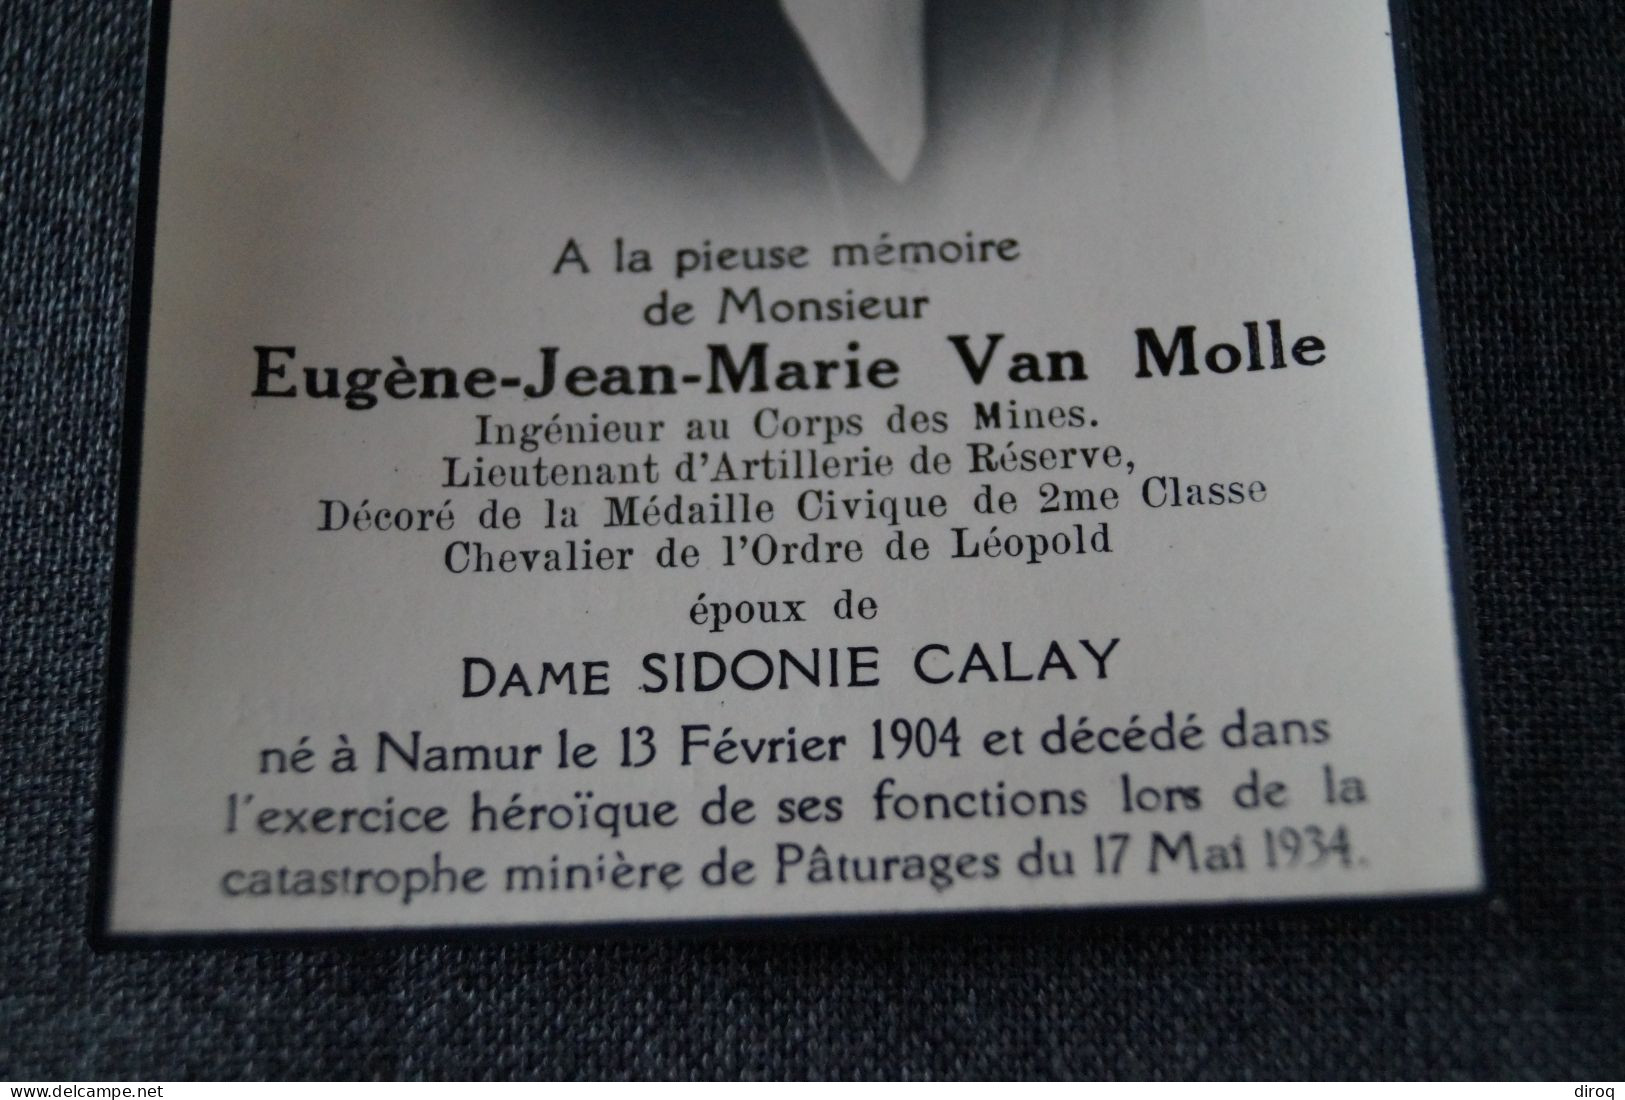 Eugène Jean-Marie Van Molle,Mineurs, 1904 - 1934 à Paturage - Overlijden